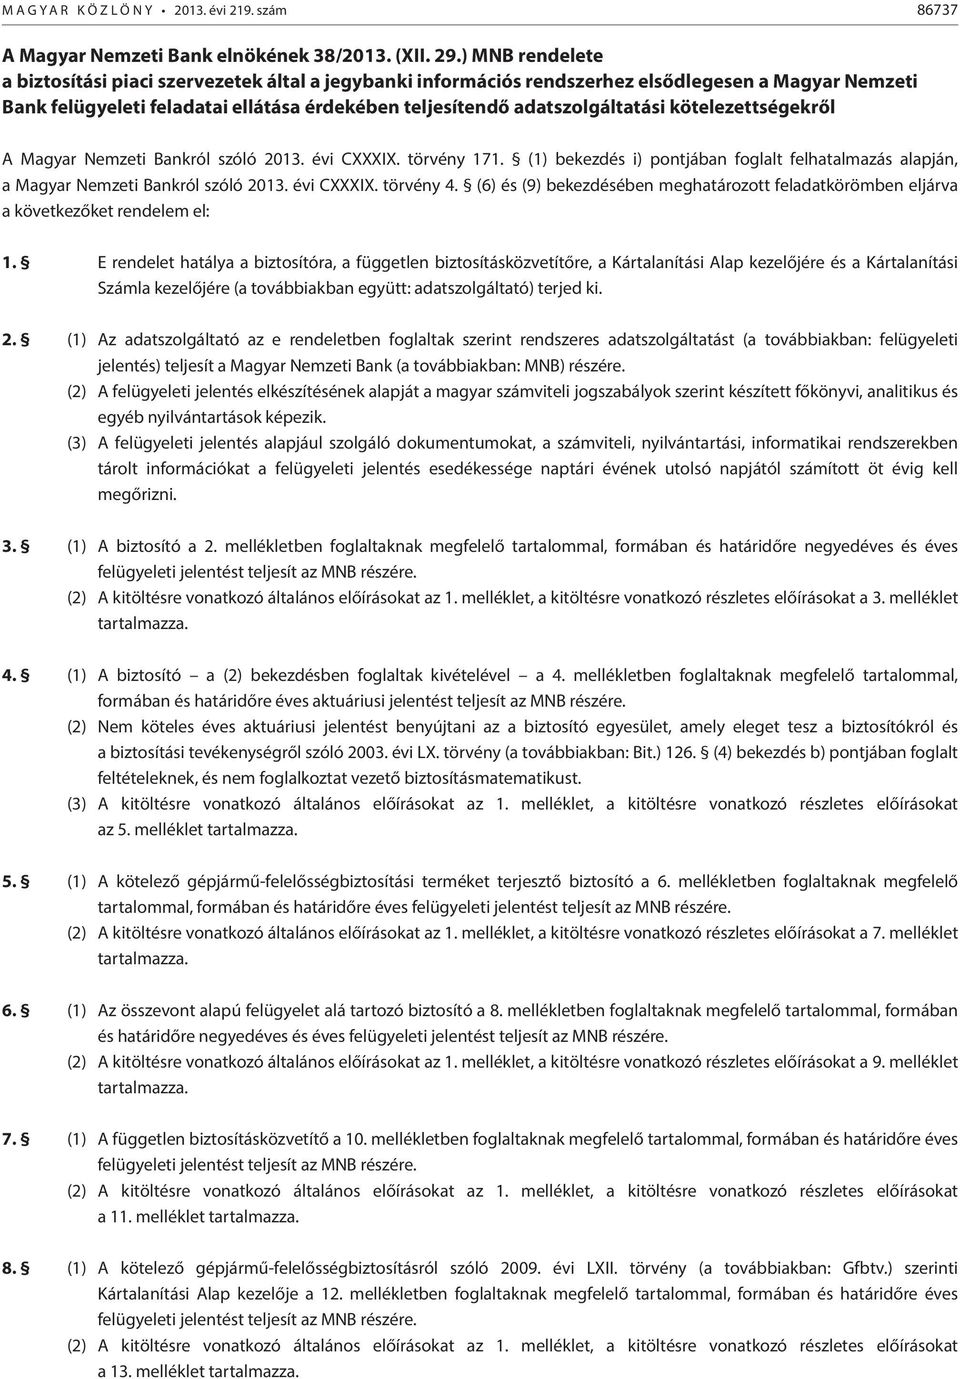 kötelezettségekről A Magyar Nemzeti Bankról szóló 2013. évi CXXXIX. törvény 171. (1) bekezdés i) pontjában foglalt felhatalmazás alapján, a Magyar Nemzeti Bankról szóló 2013. évi CXXXIX. törvény 4.